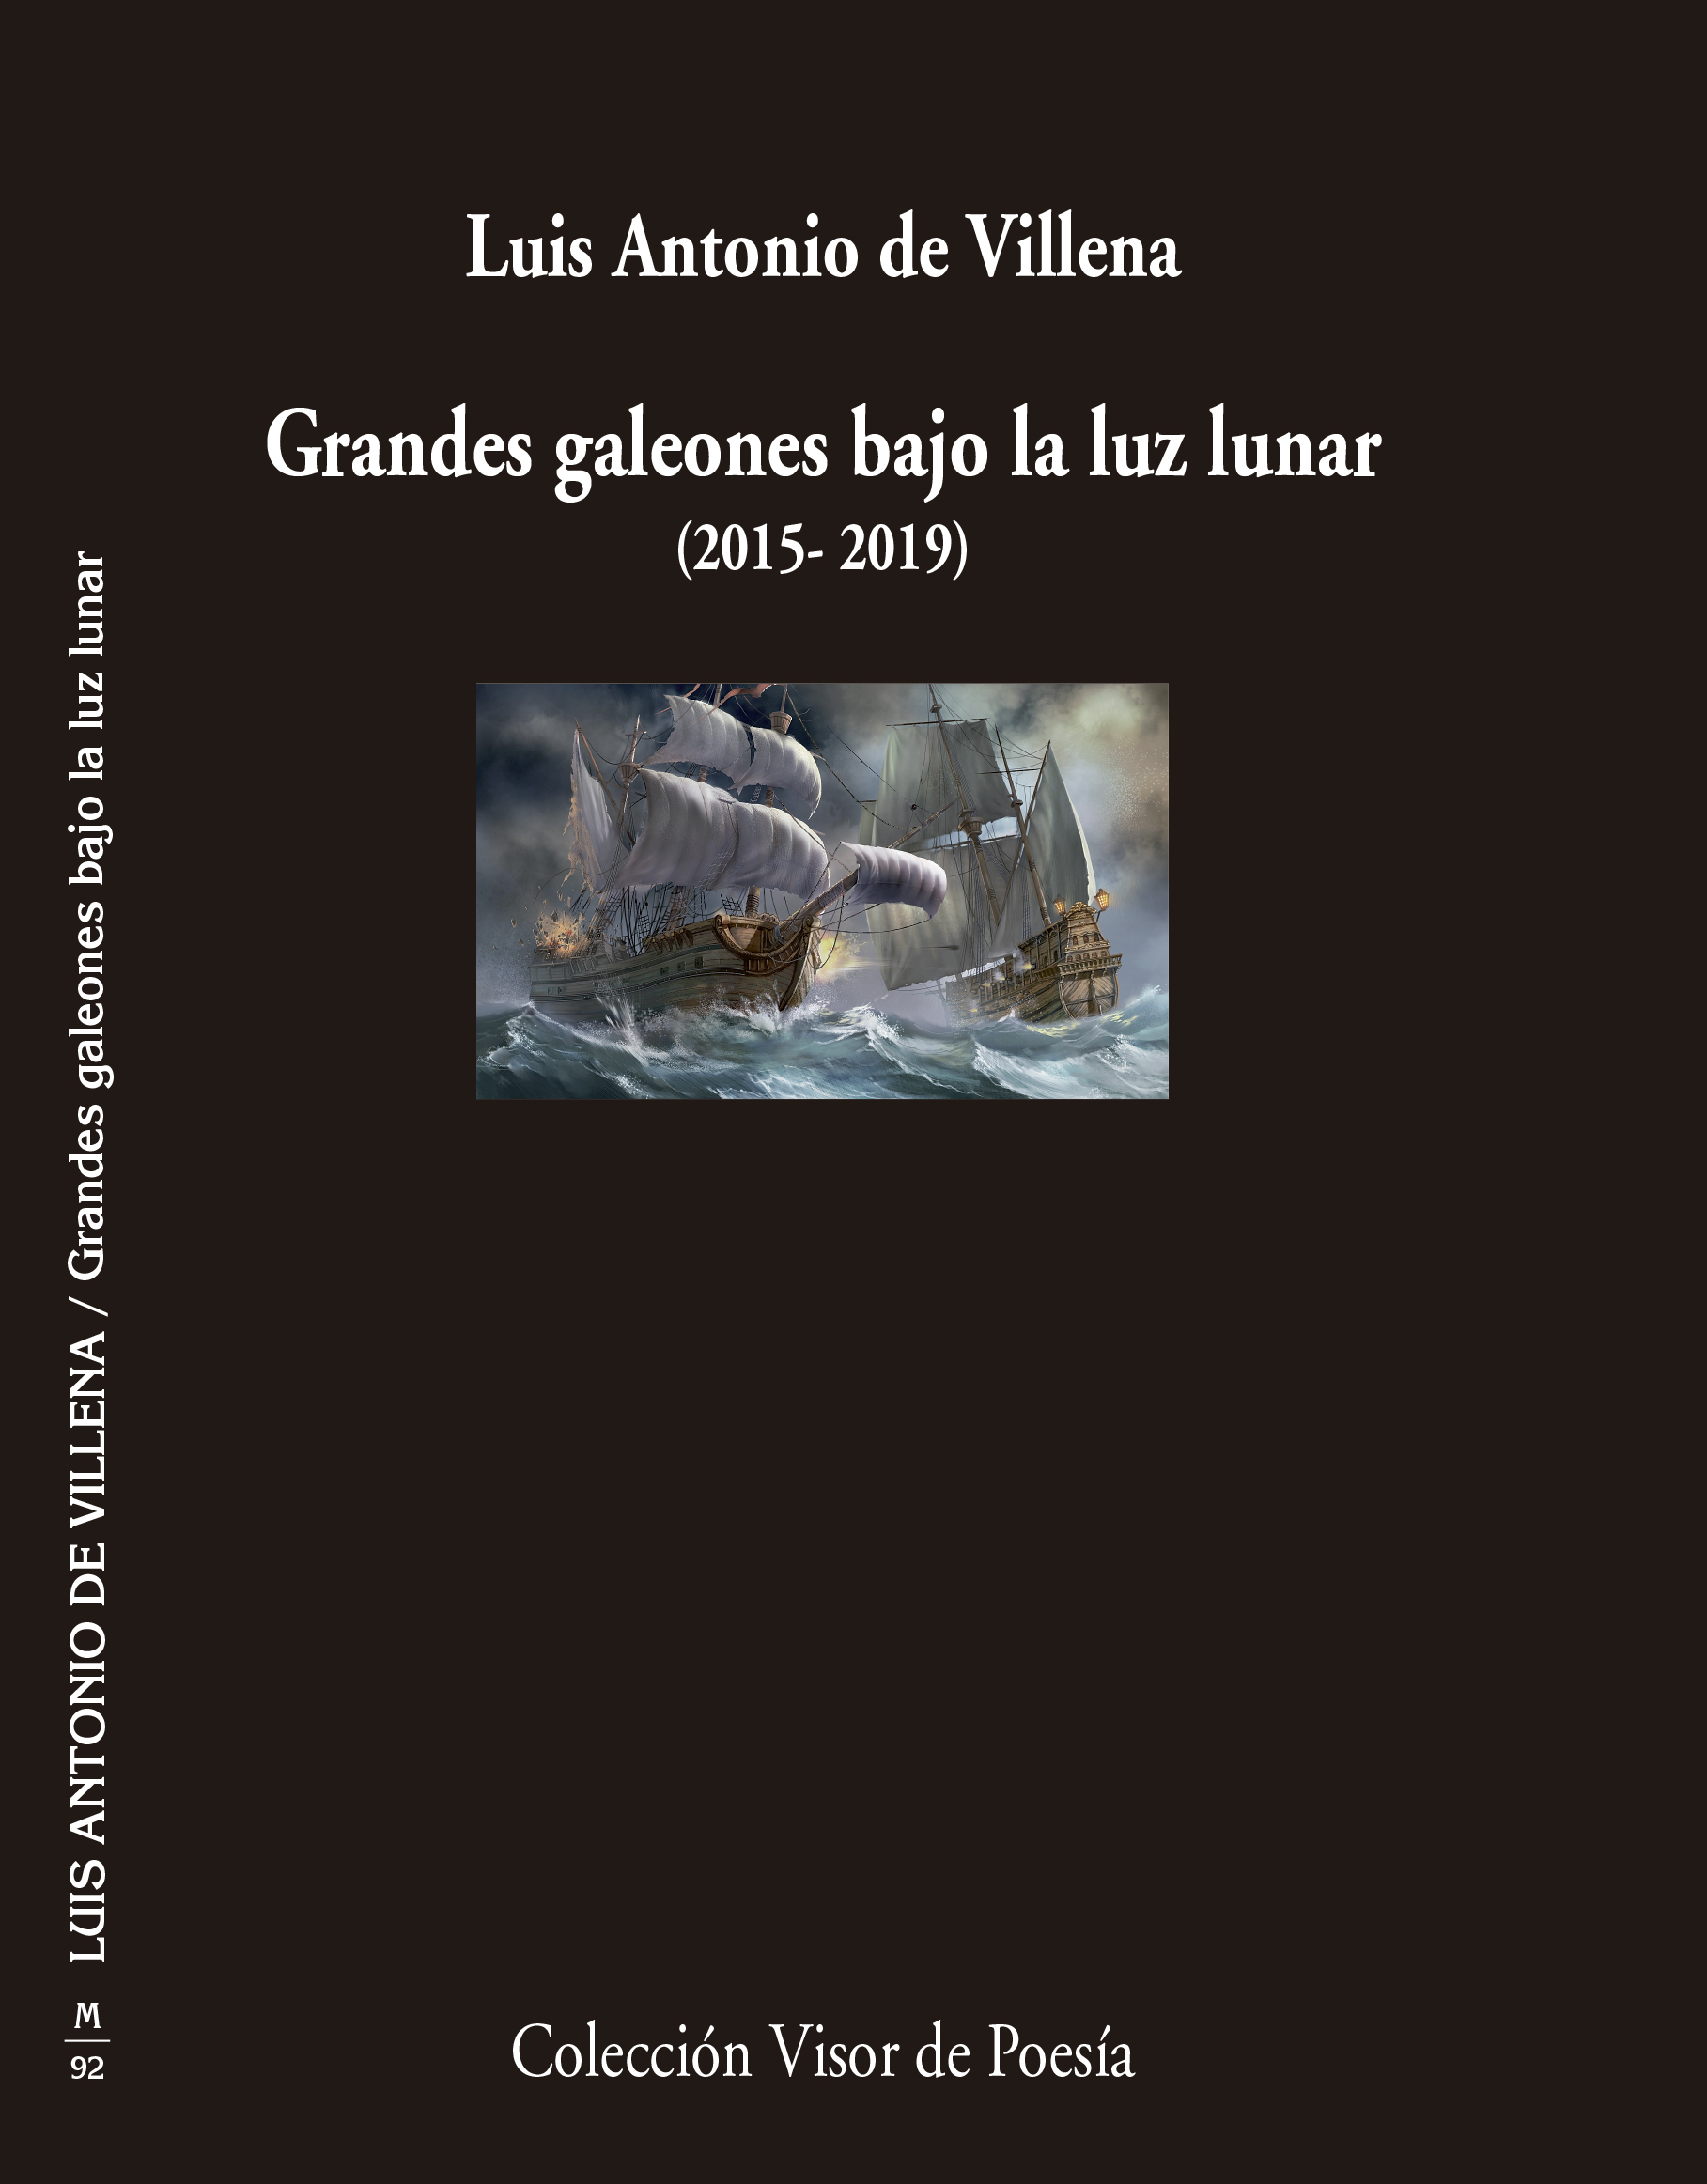 Grandes galeones bajo la luz lunar, poemas de Luis Antonio de Villena